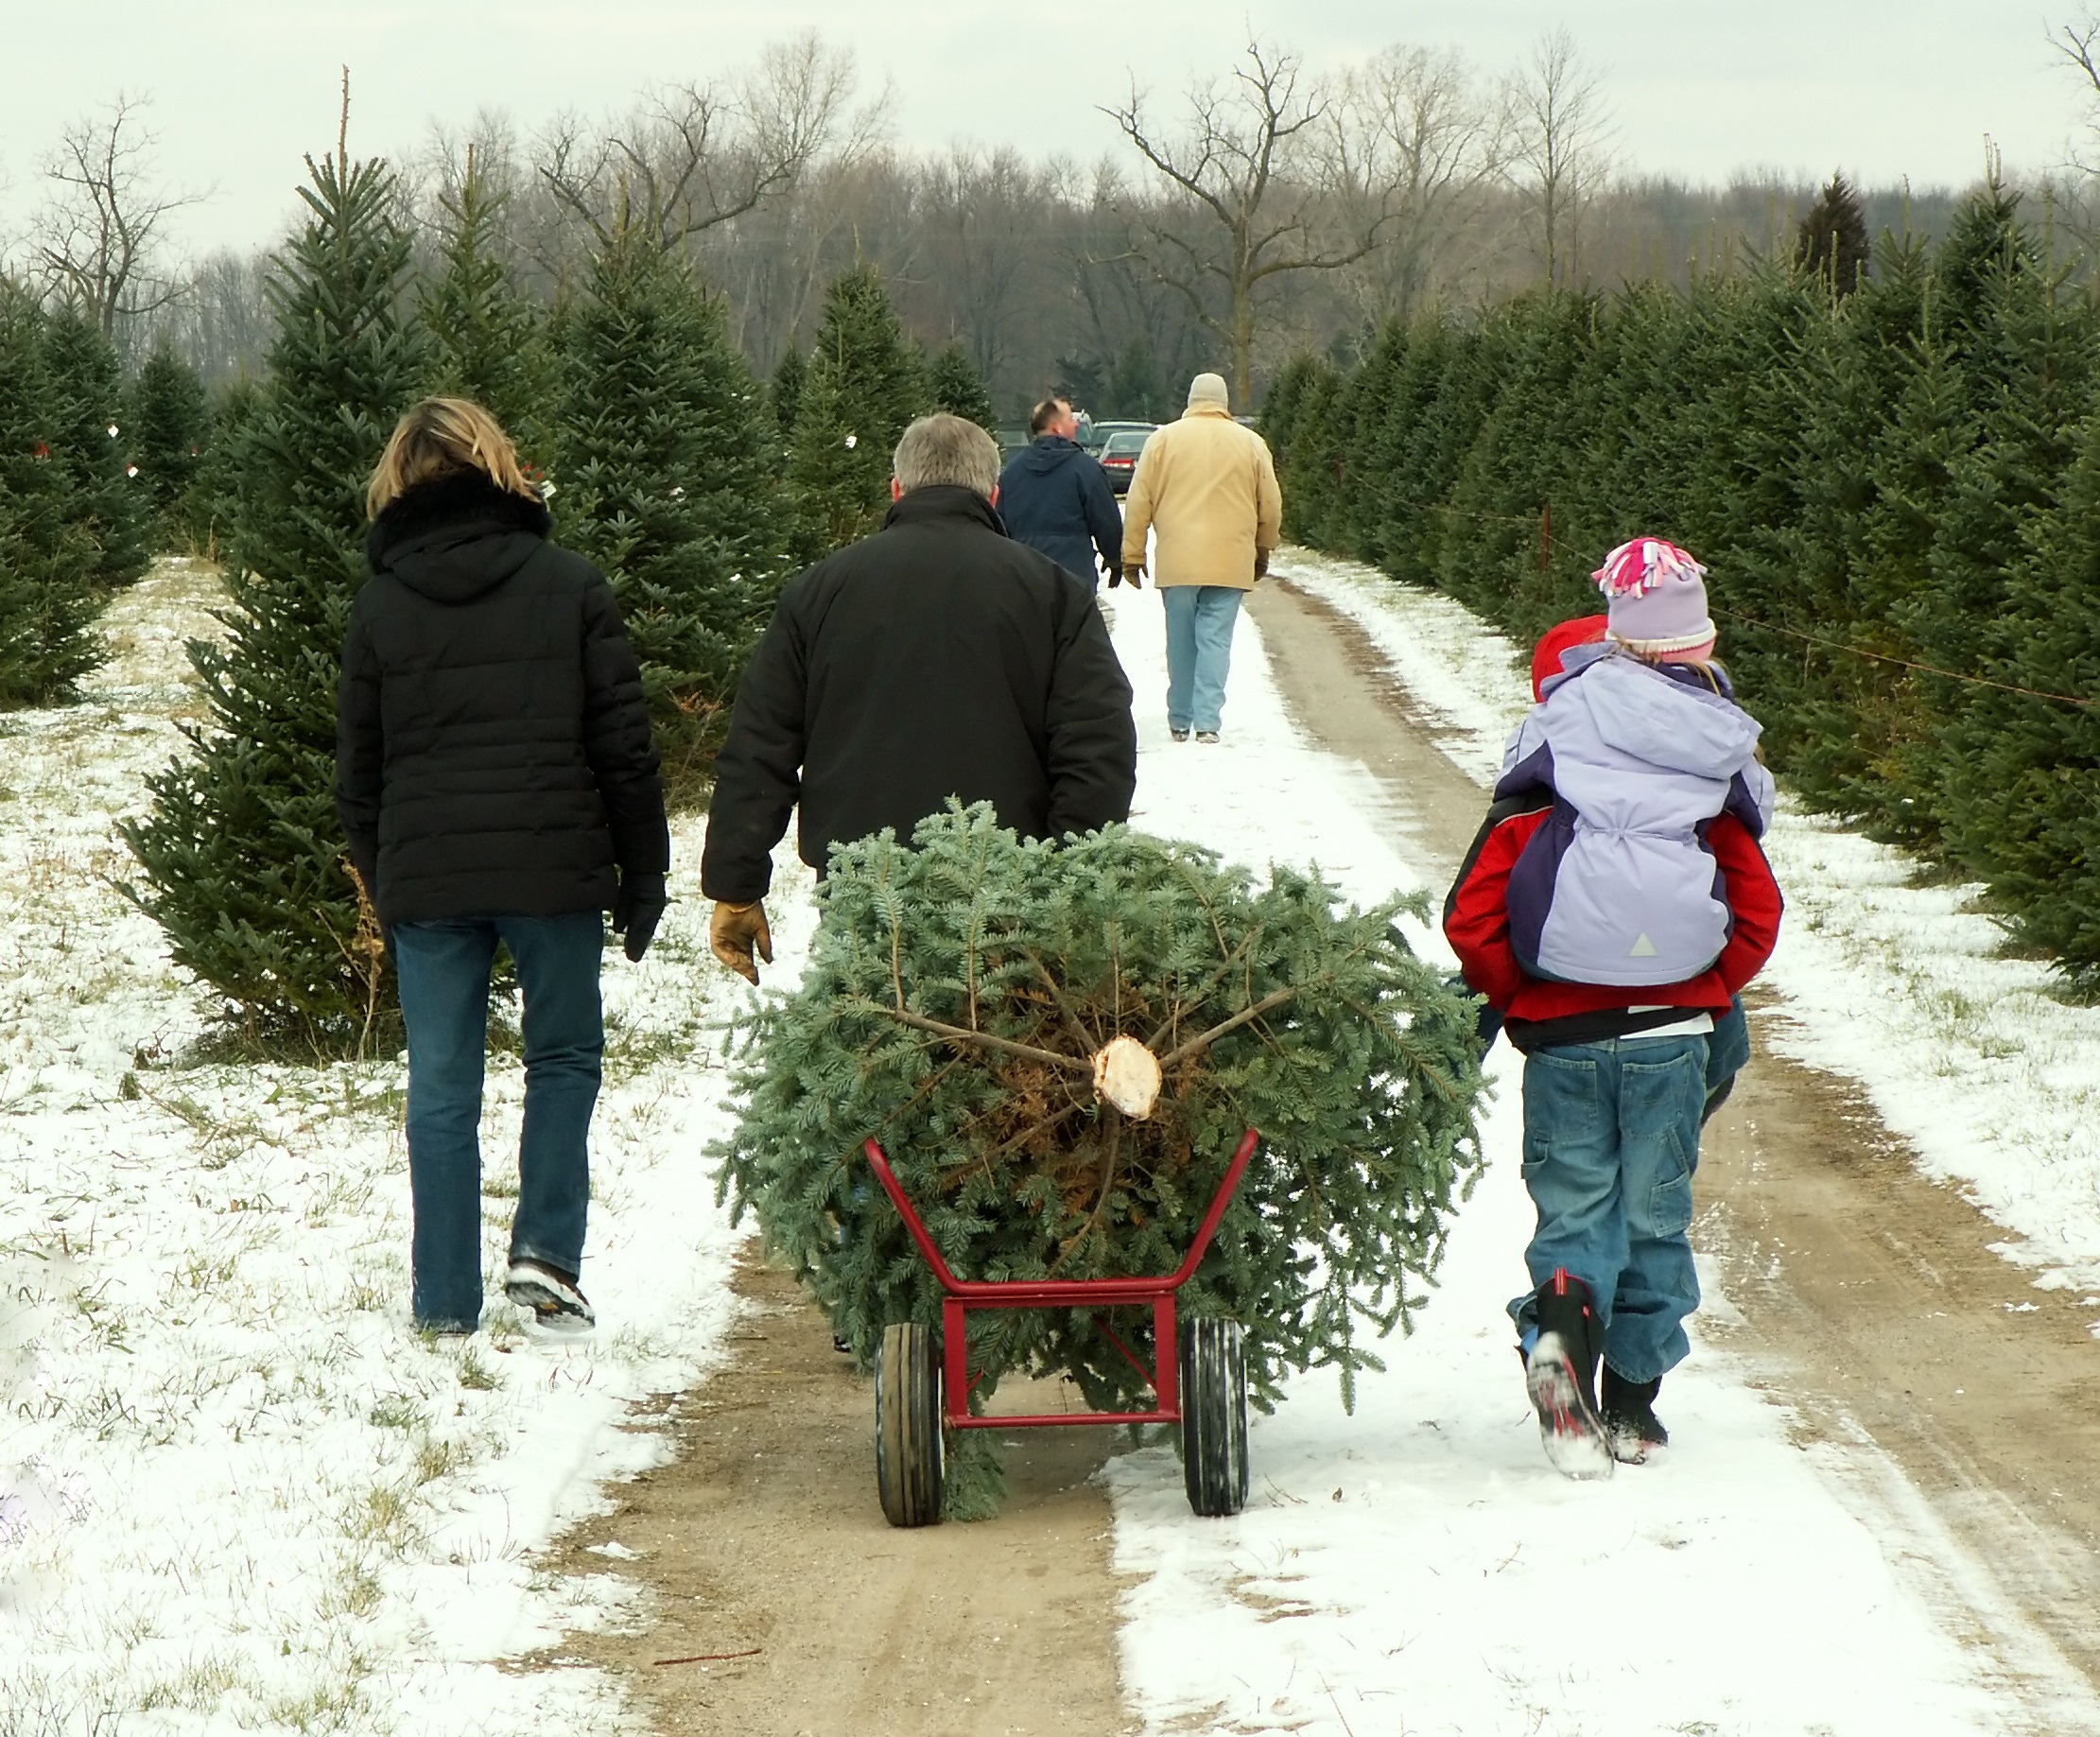 Choosing The Perfect Christmas Tree | OrnamentShop.com